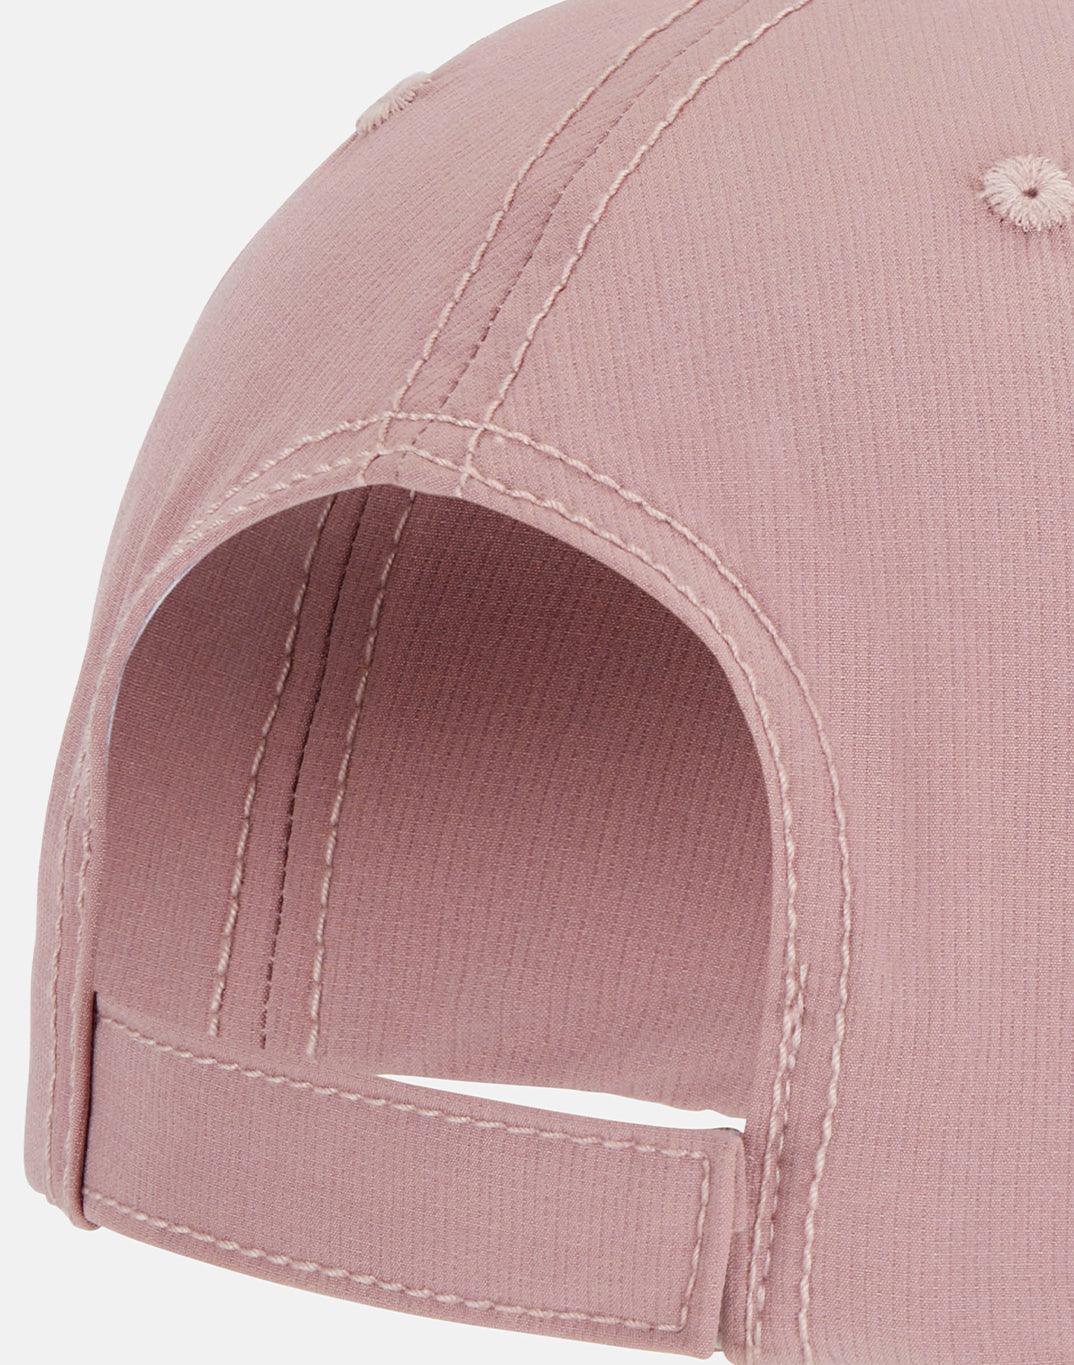 No Shade Cap In Dusty Pink - Headwear - Windsorbauders IE